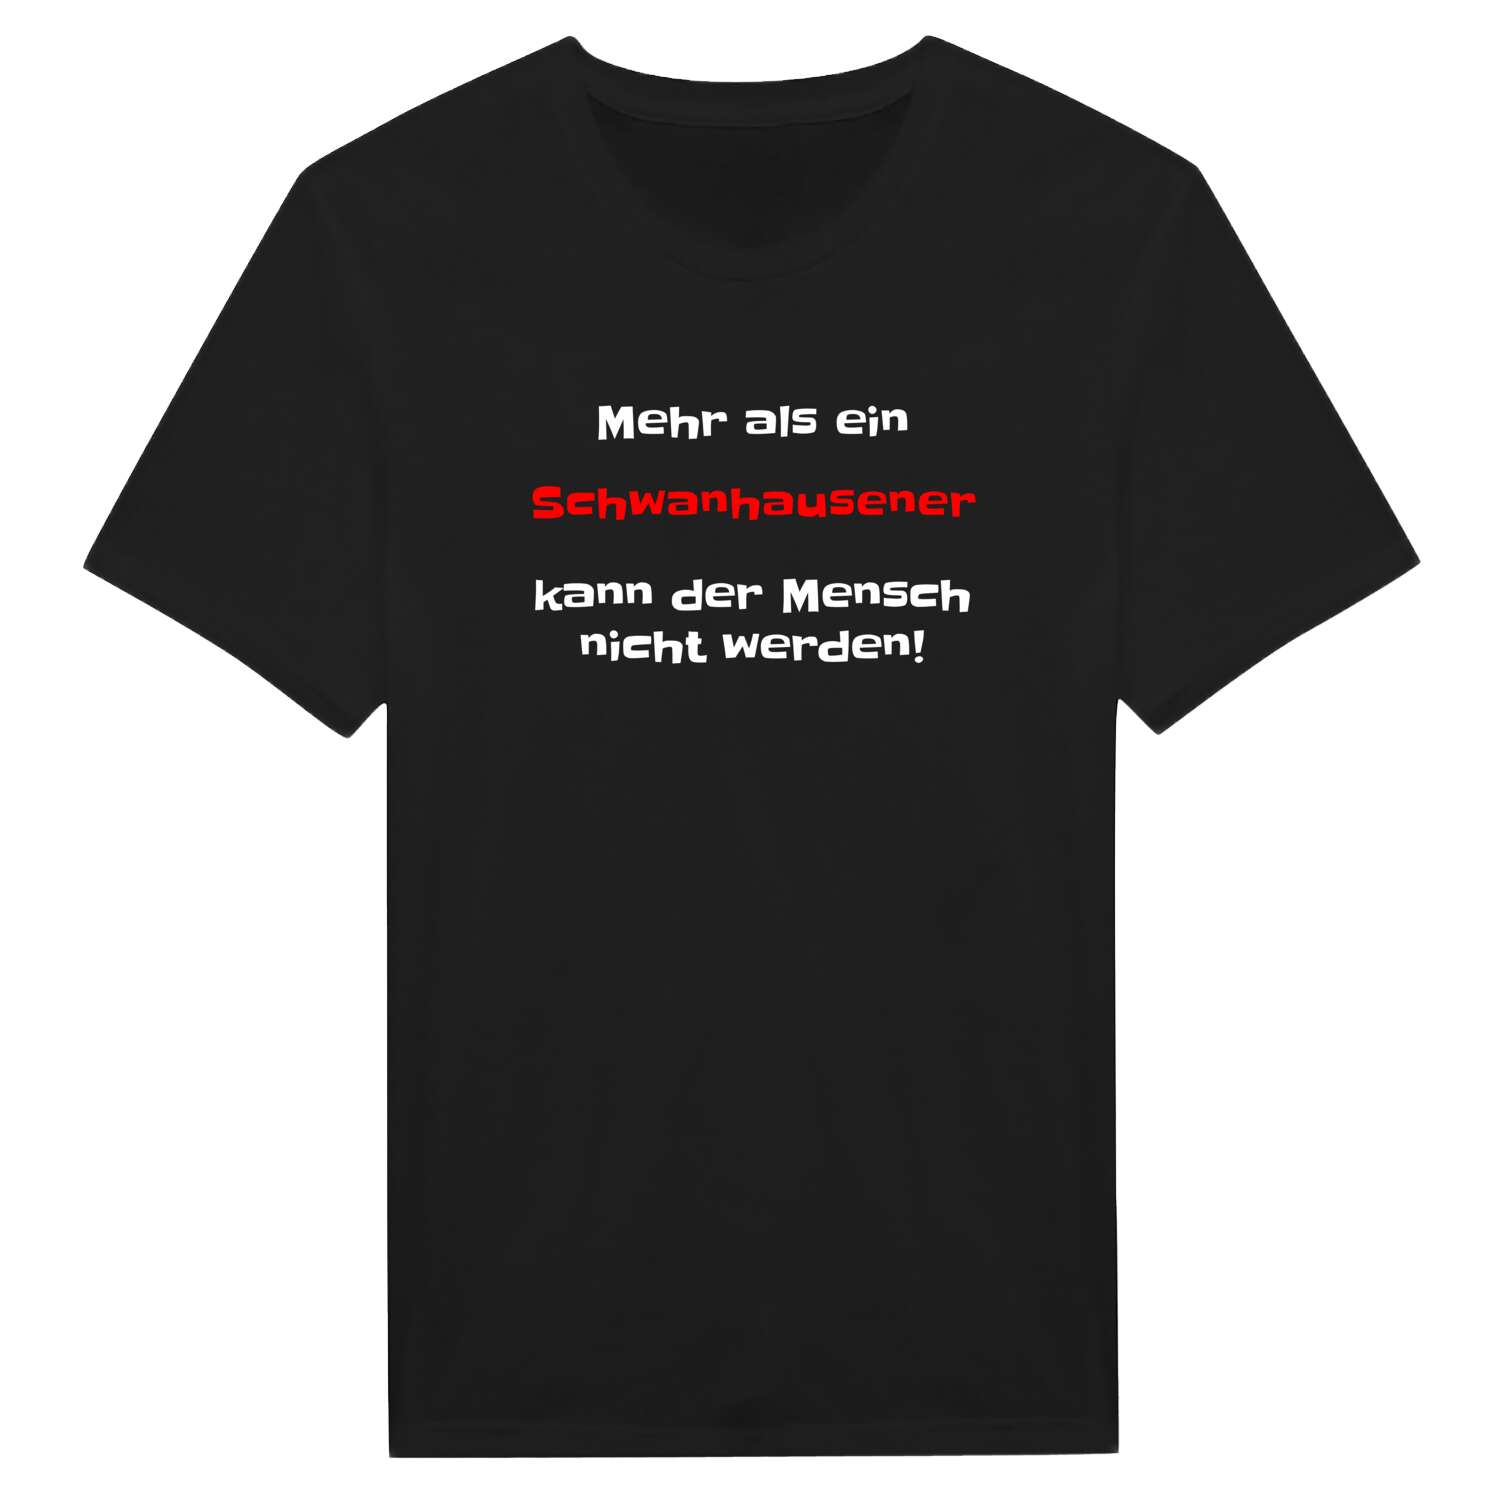 Schwanhausen T-Shirt »Mehr als ein«